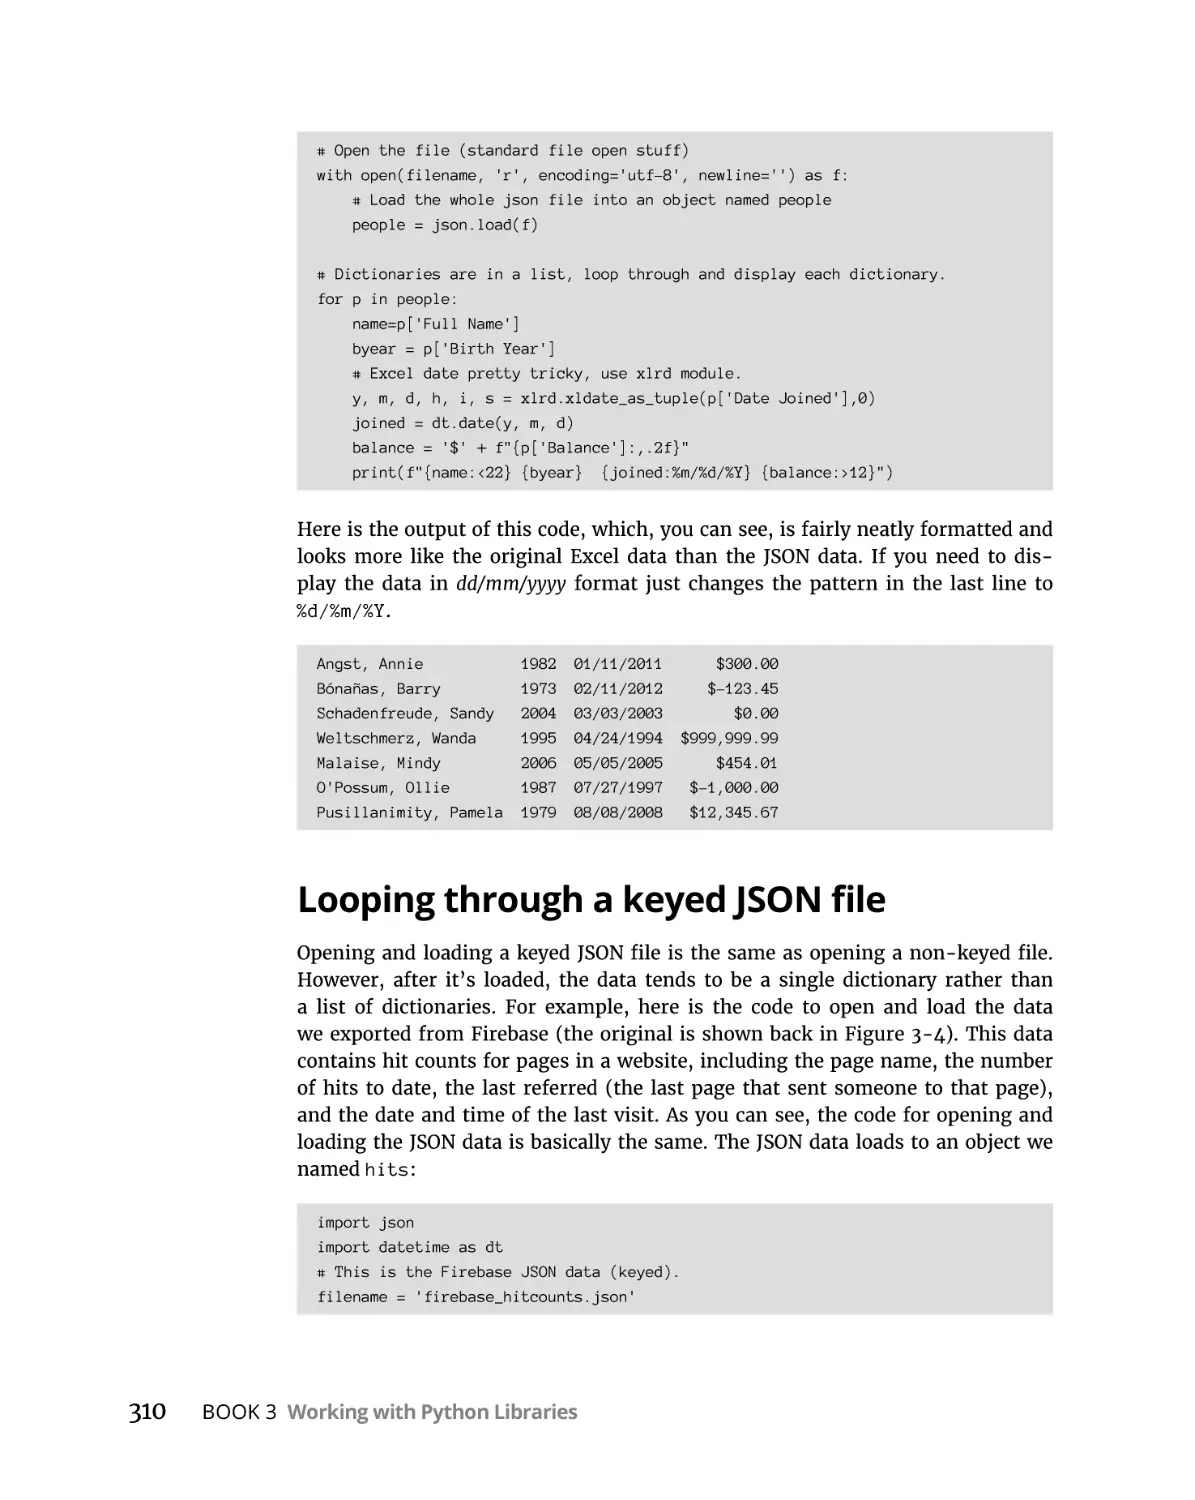 Looping through a keyed JSON file